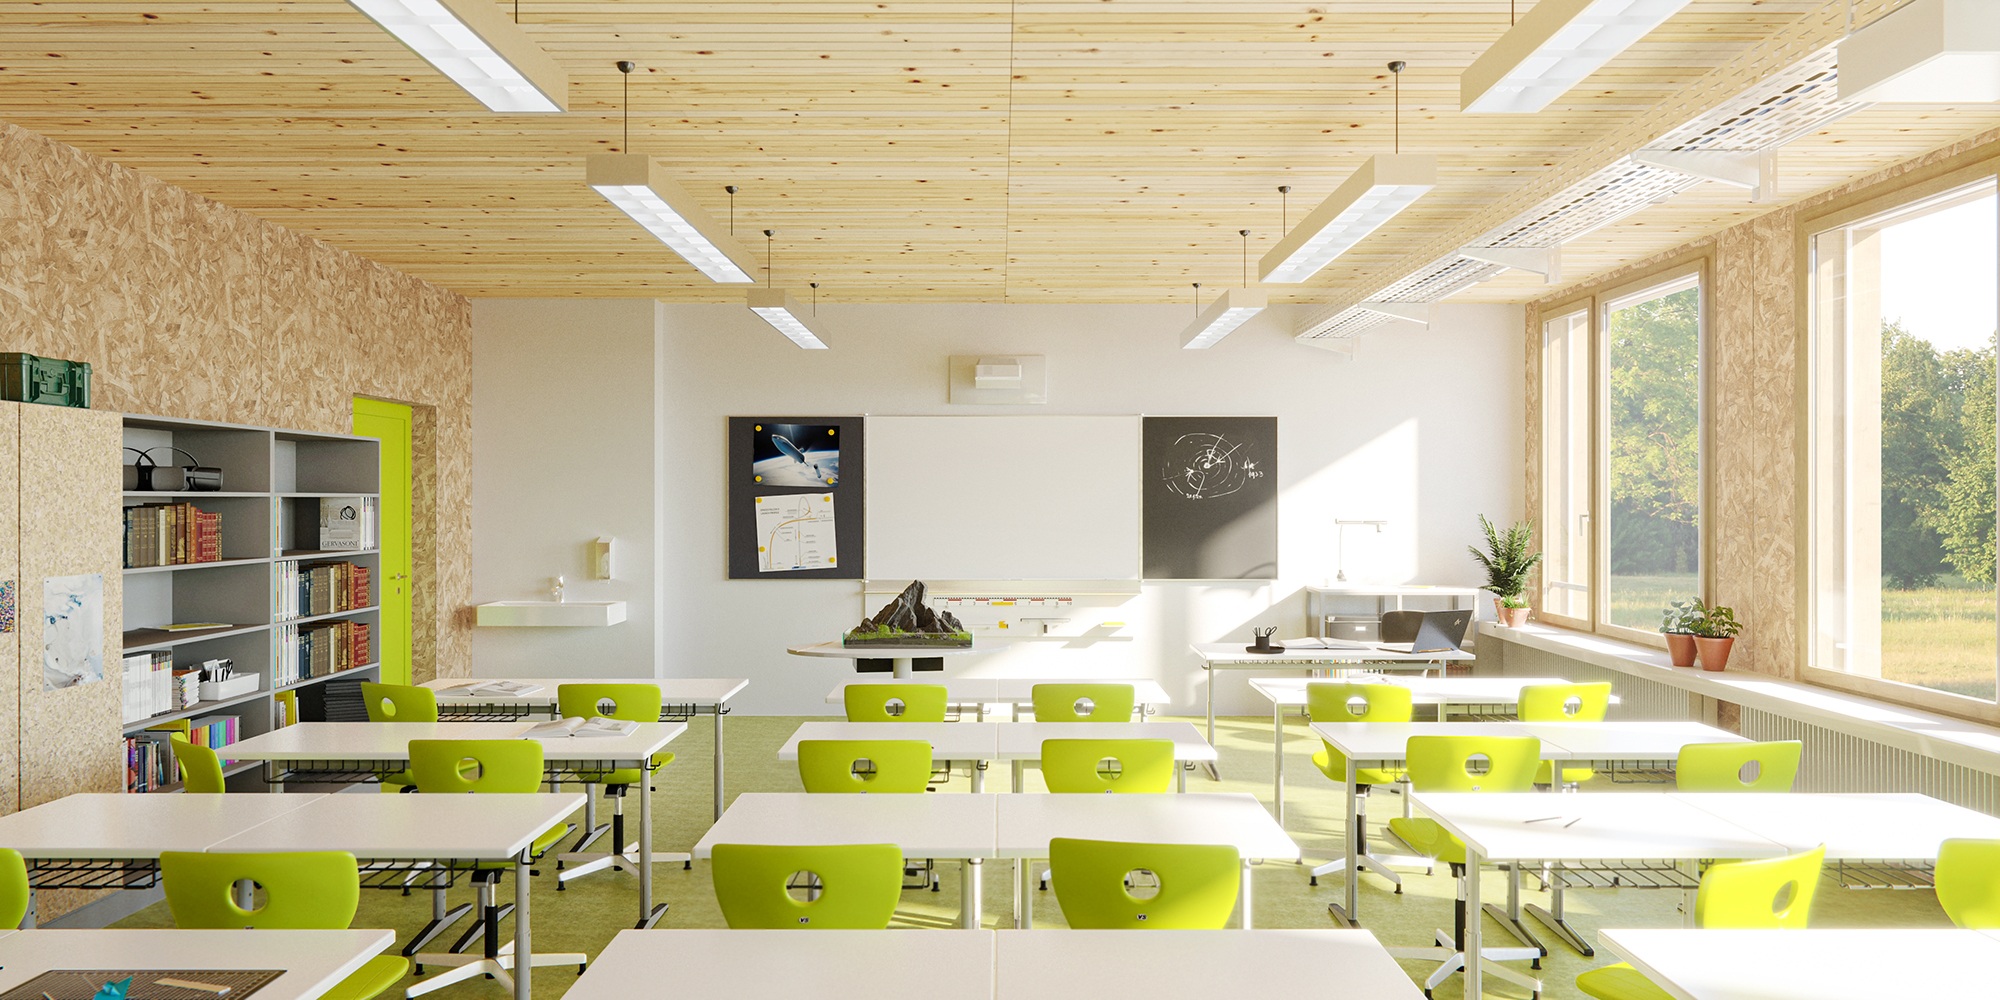 Salle de classe meublée et intérieur de l’école en construction modulaire en bois